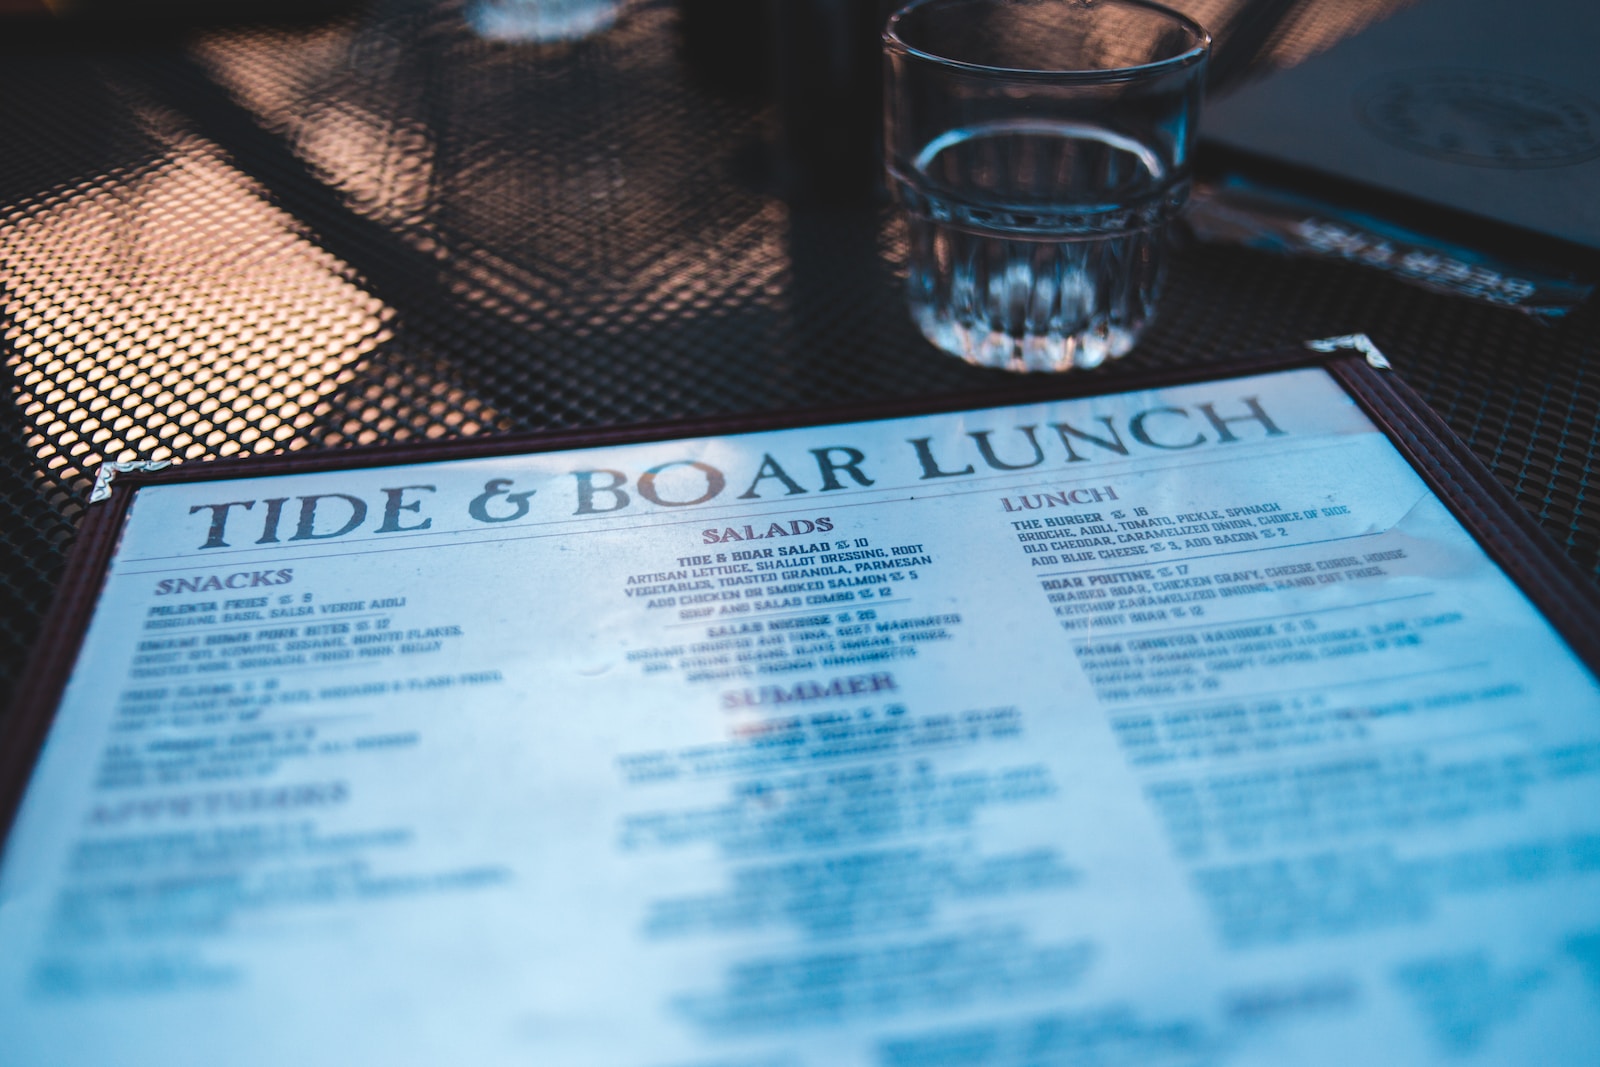 Tide & Boar Lunch menu